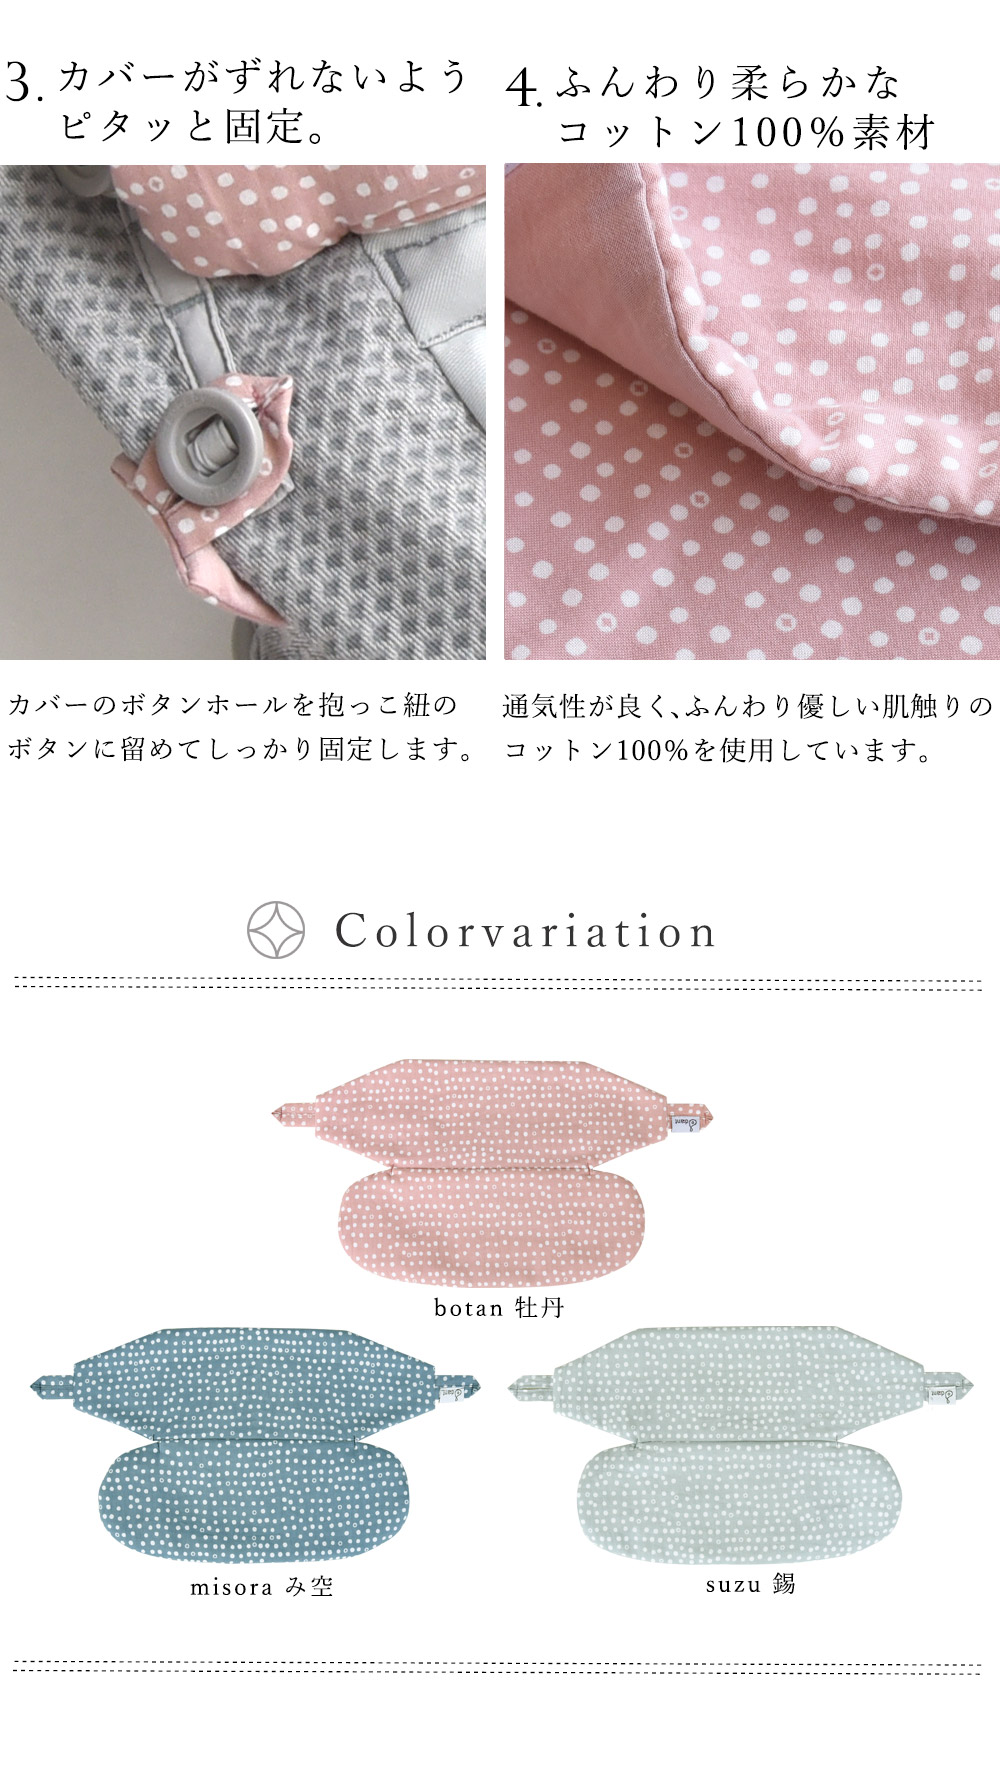 赤ちゃんにとことん優しいふんわり柔らかな肌触りと安心安全な素材。糸やタグに至るまですべて日本製素材を使用